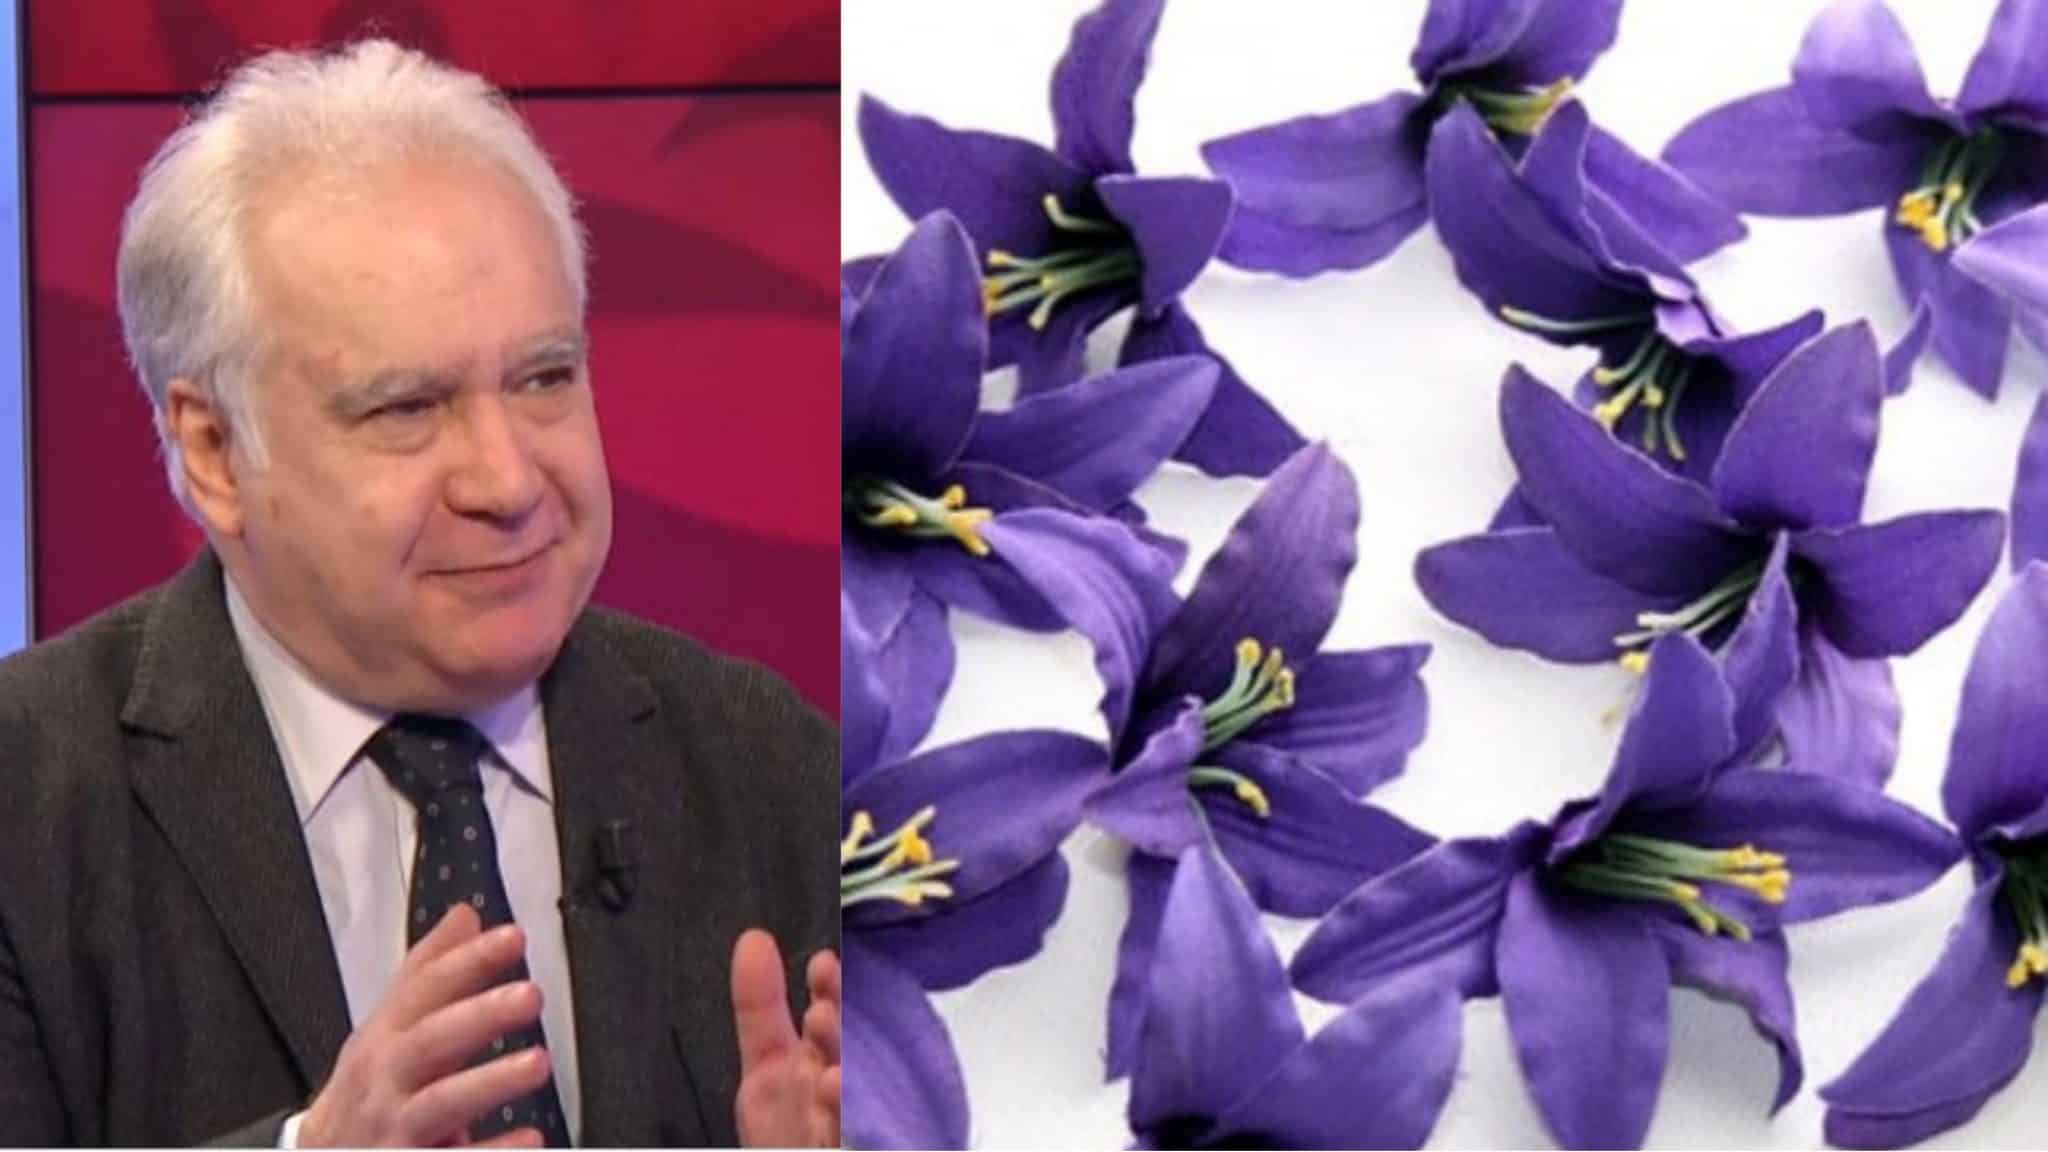 Déconcerté et son grand amour pour la Fiorentina, ses funérailles seront pleines de lys violets